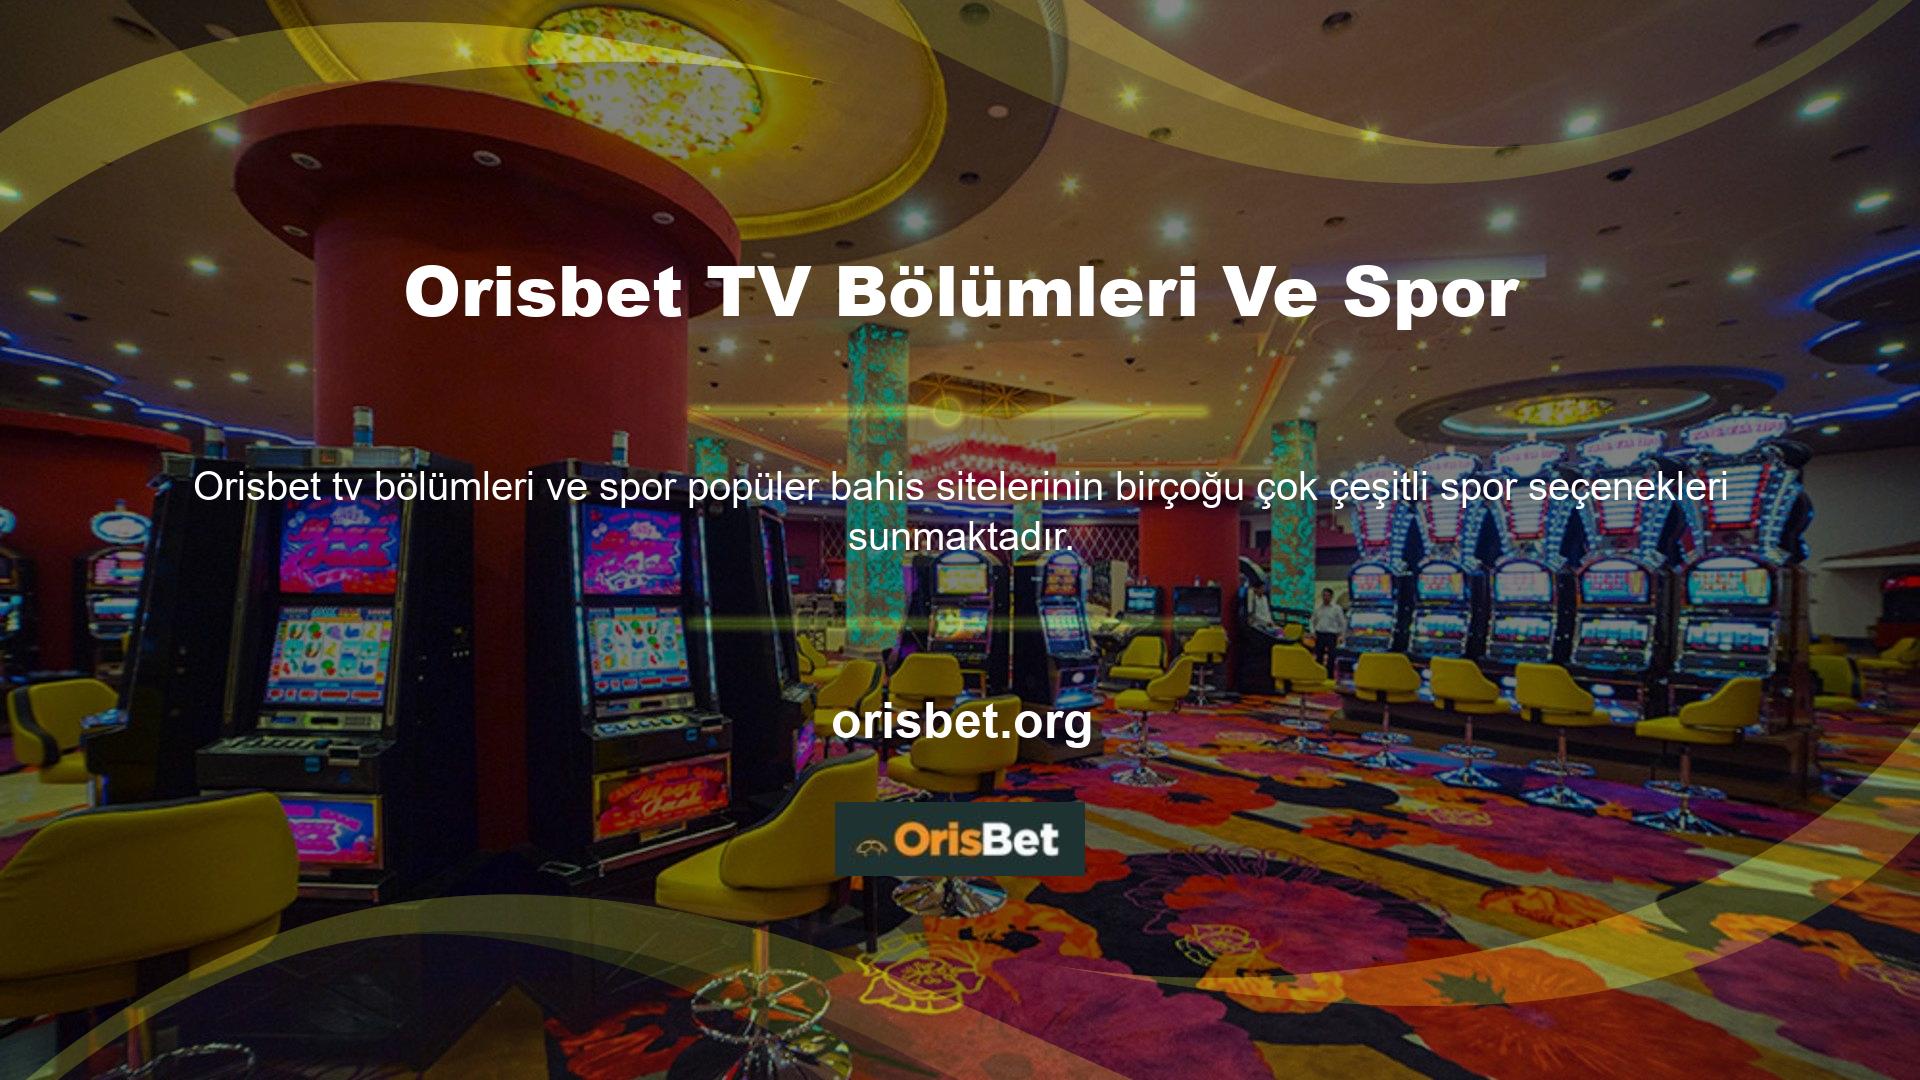 Diğer tüm siteler gibi Orisbet hemen hemen herkesin ilgi alanına giren sporları sunmaktadır